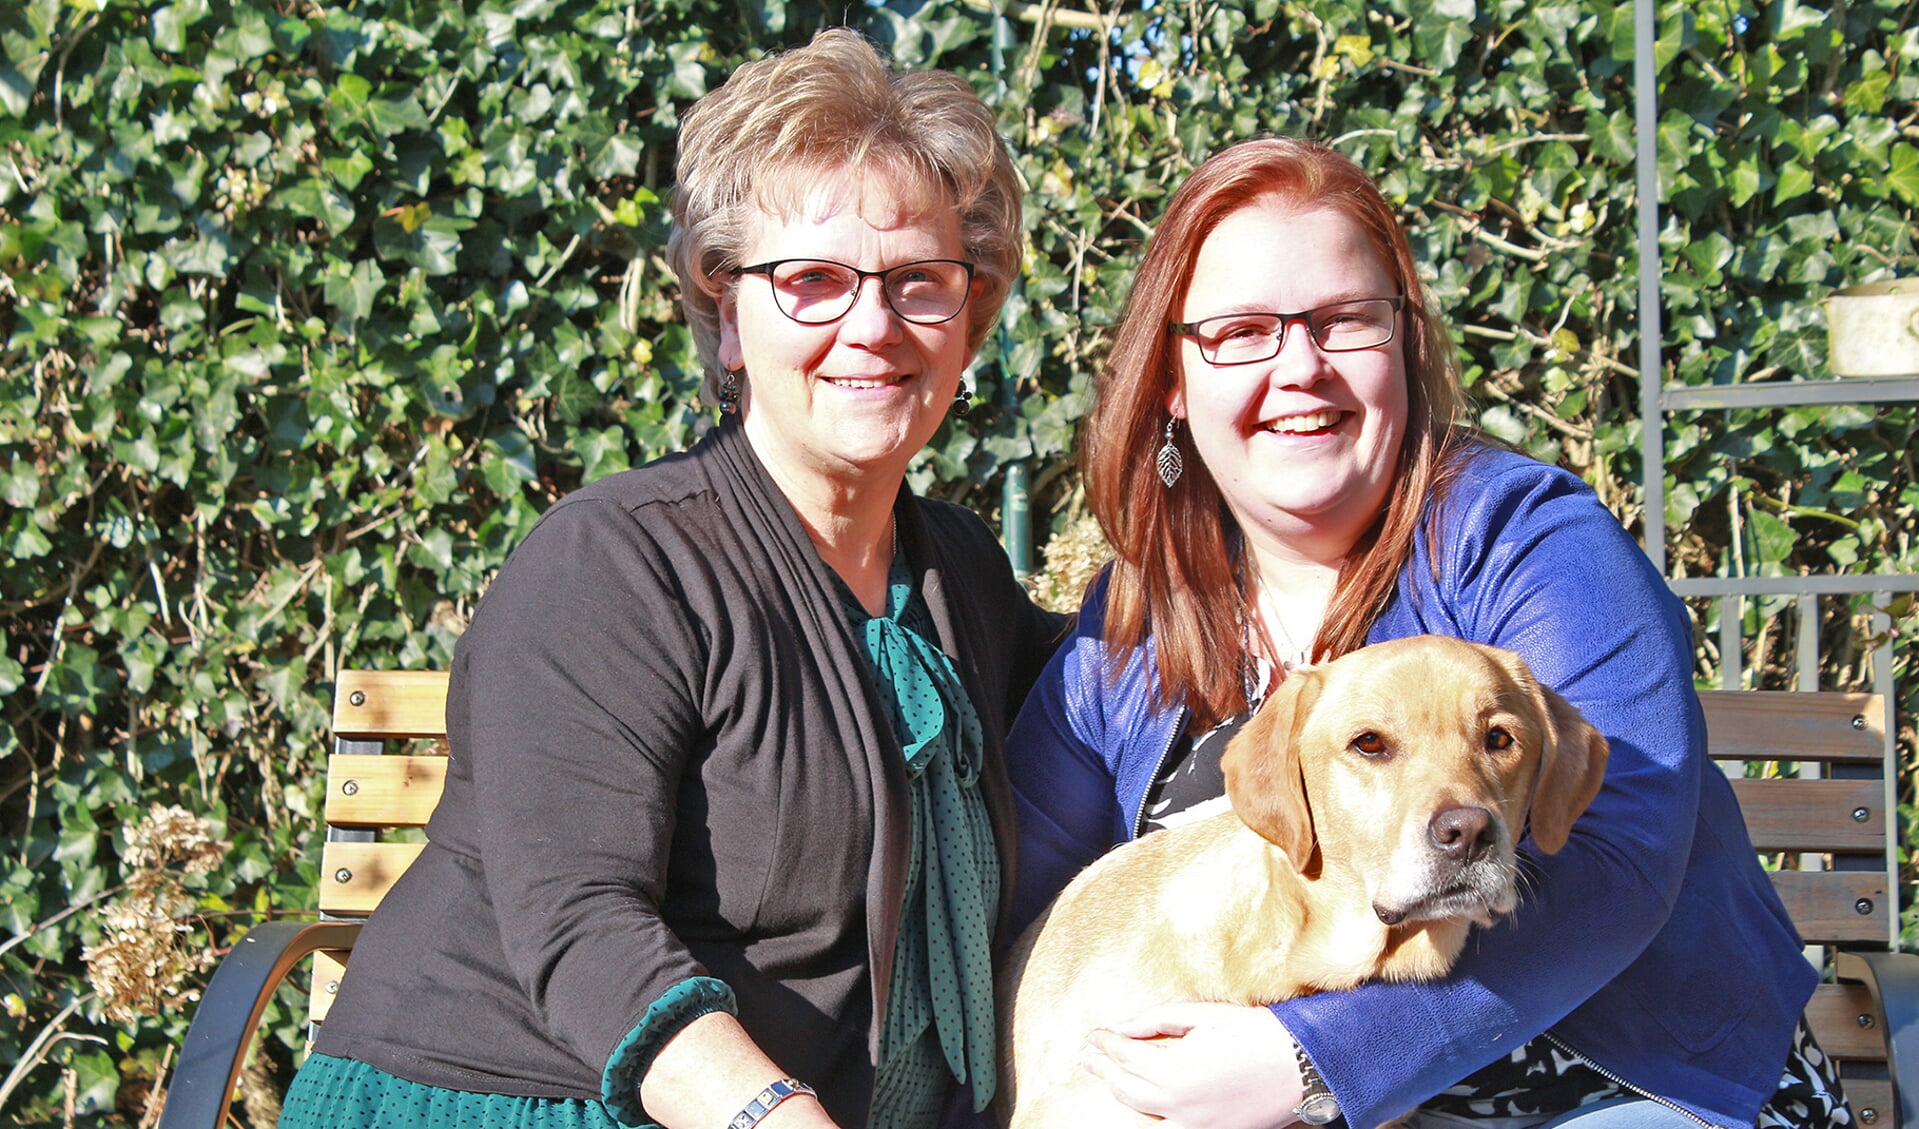 Moeder Annelies en Debby genieten nog bewuster van het leven. Hond Buddy helpt hen daarbij.